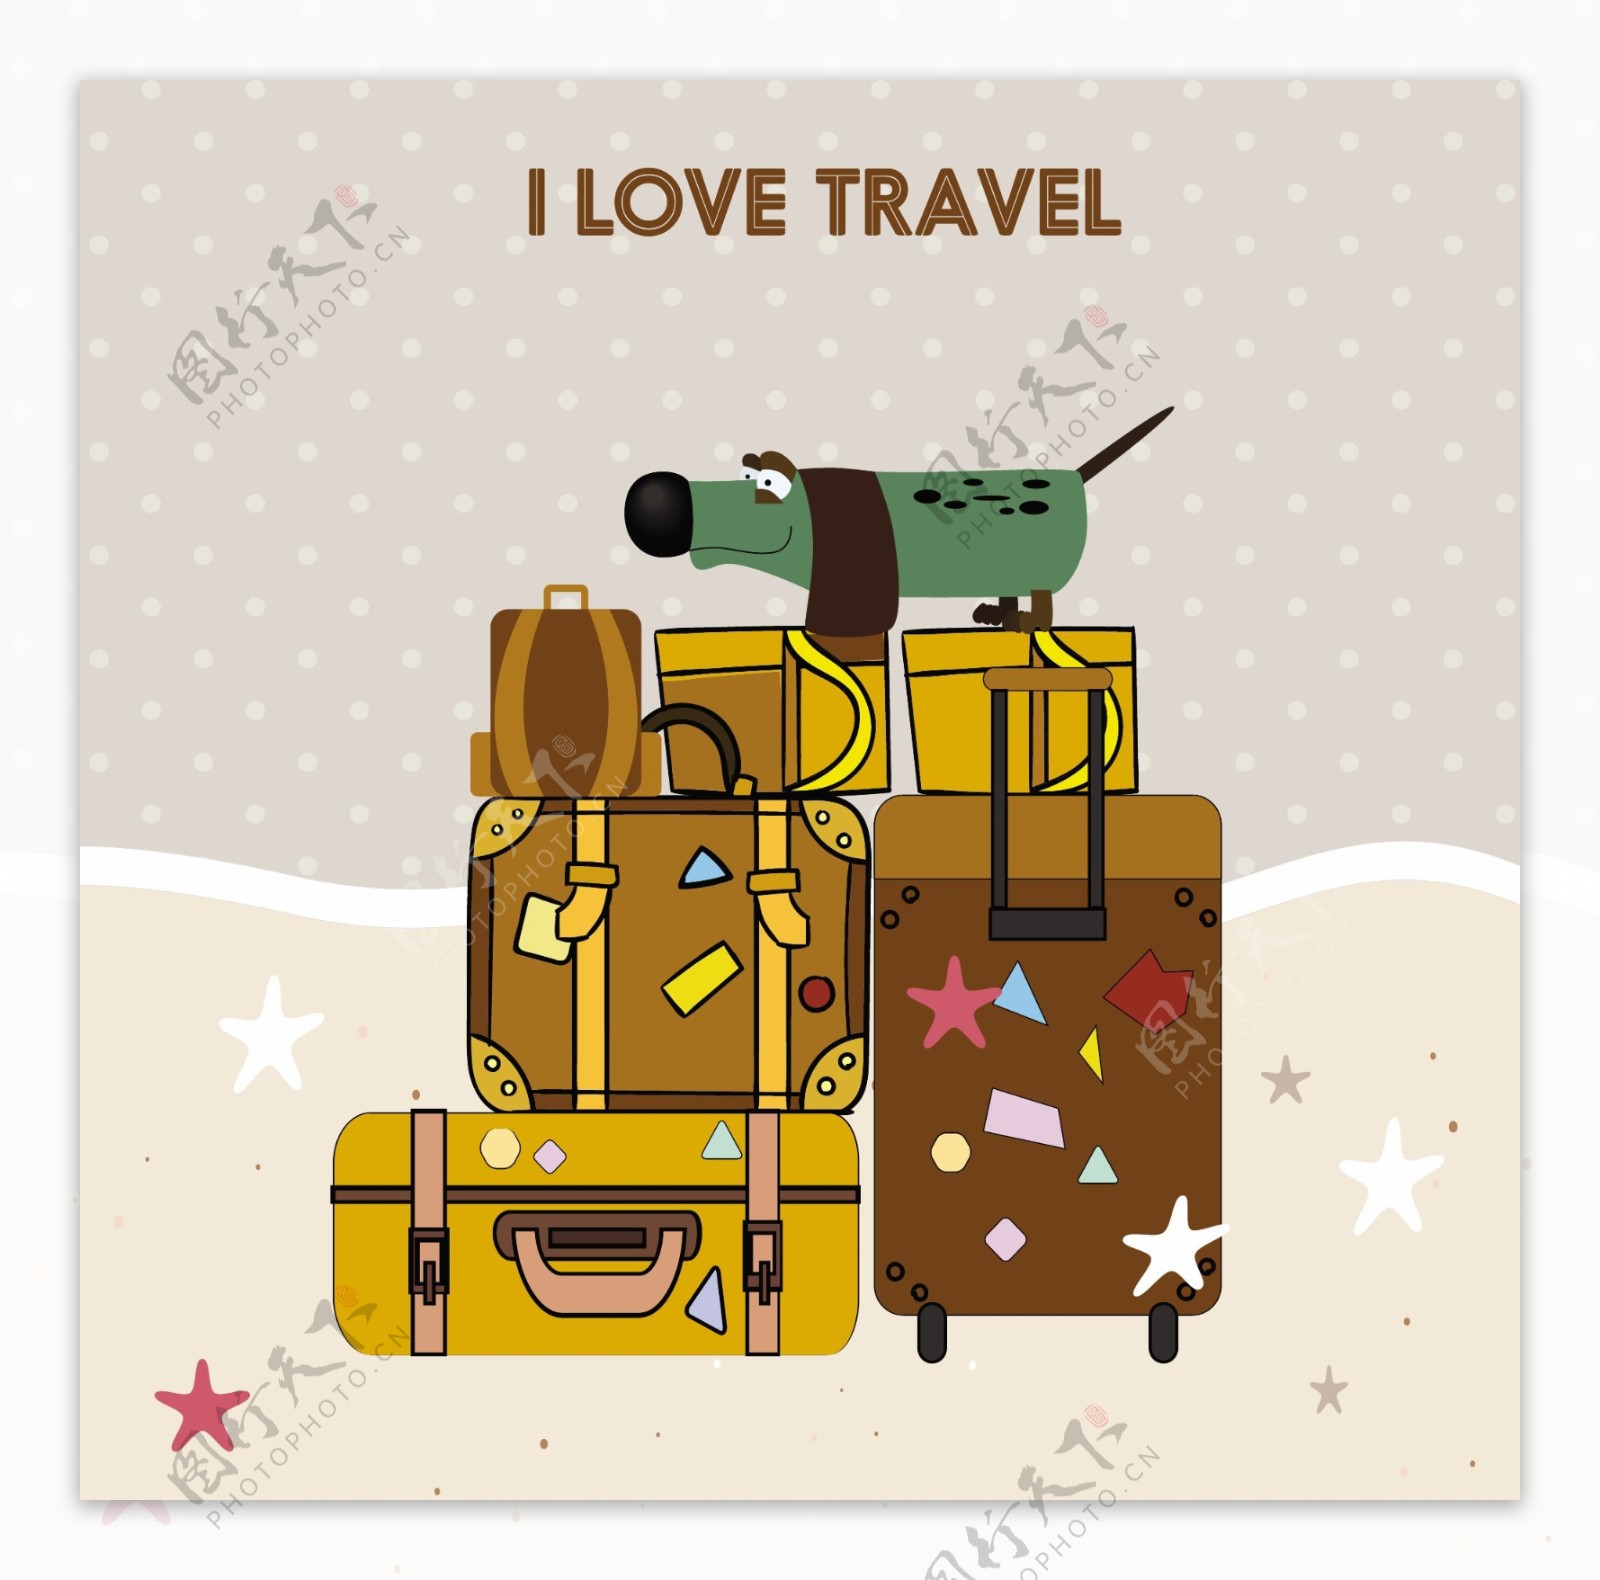 我爱旅游概念手提箱插图